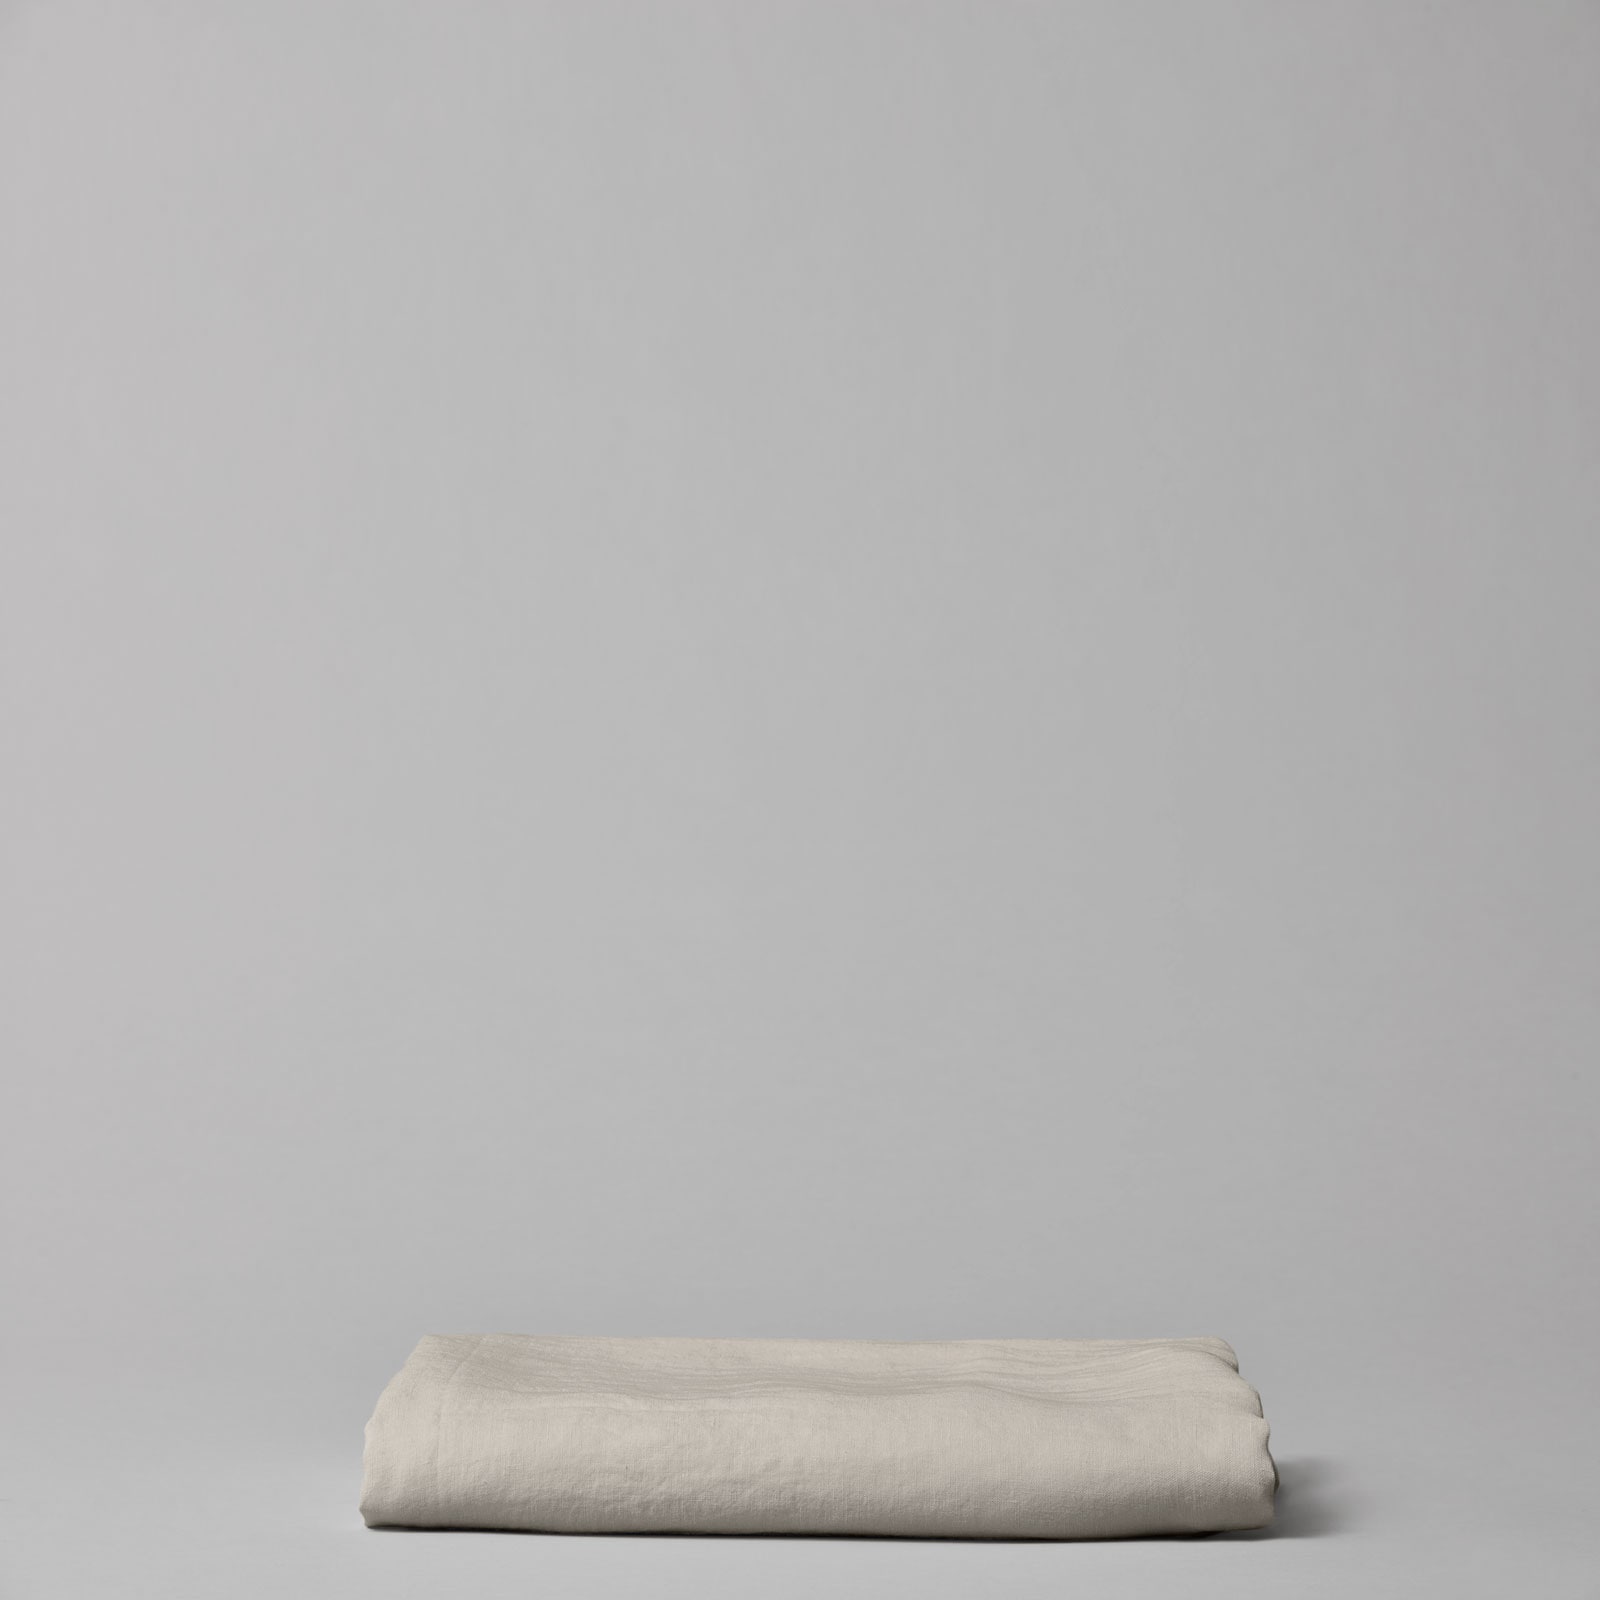 Linen tablecloth/bed sheet